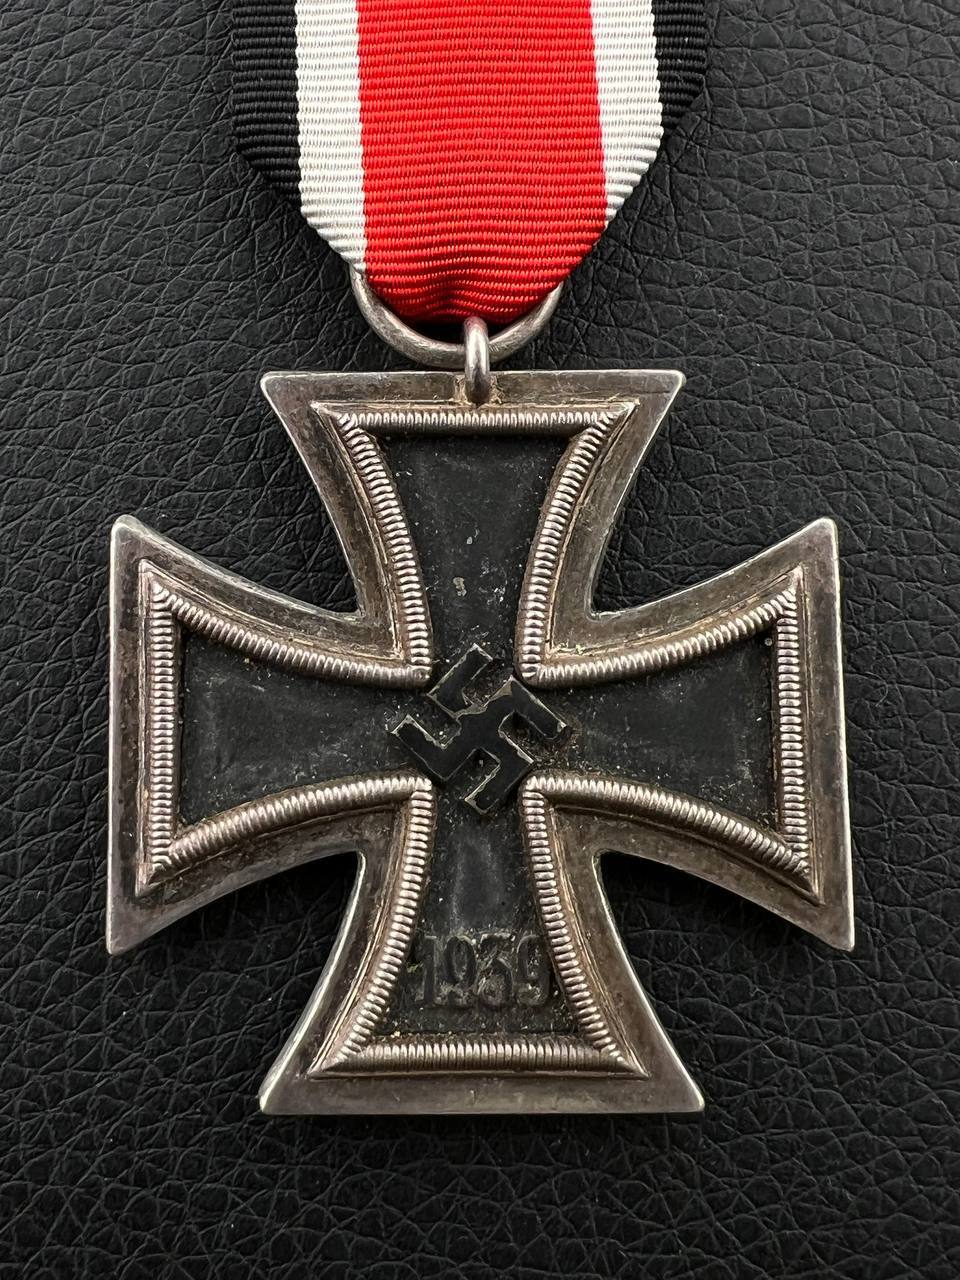 Железный крест 2 класса от Алексея С.